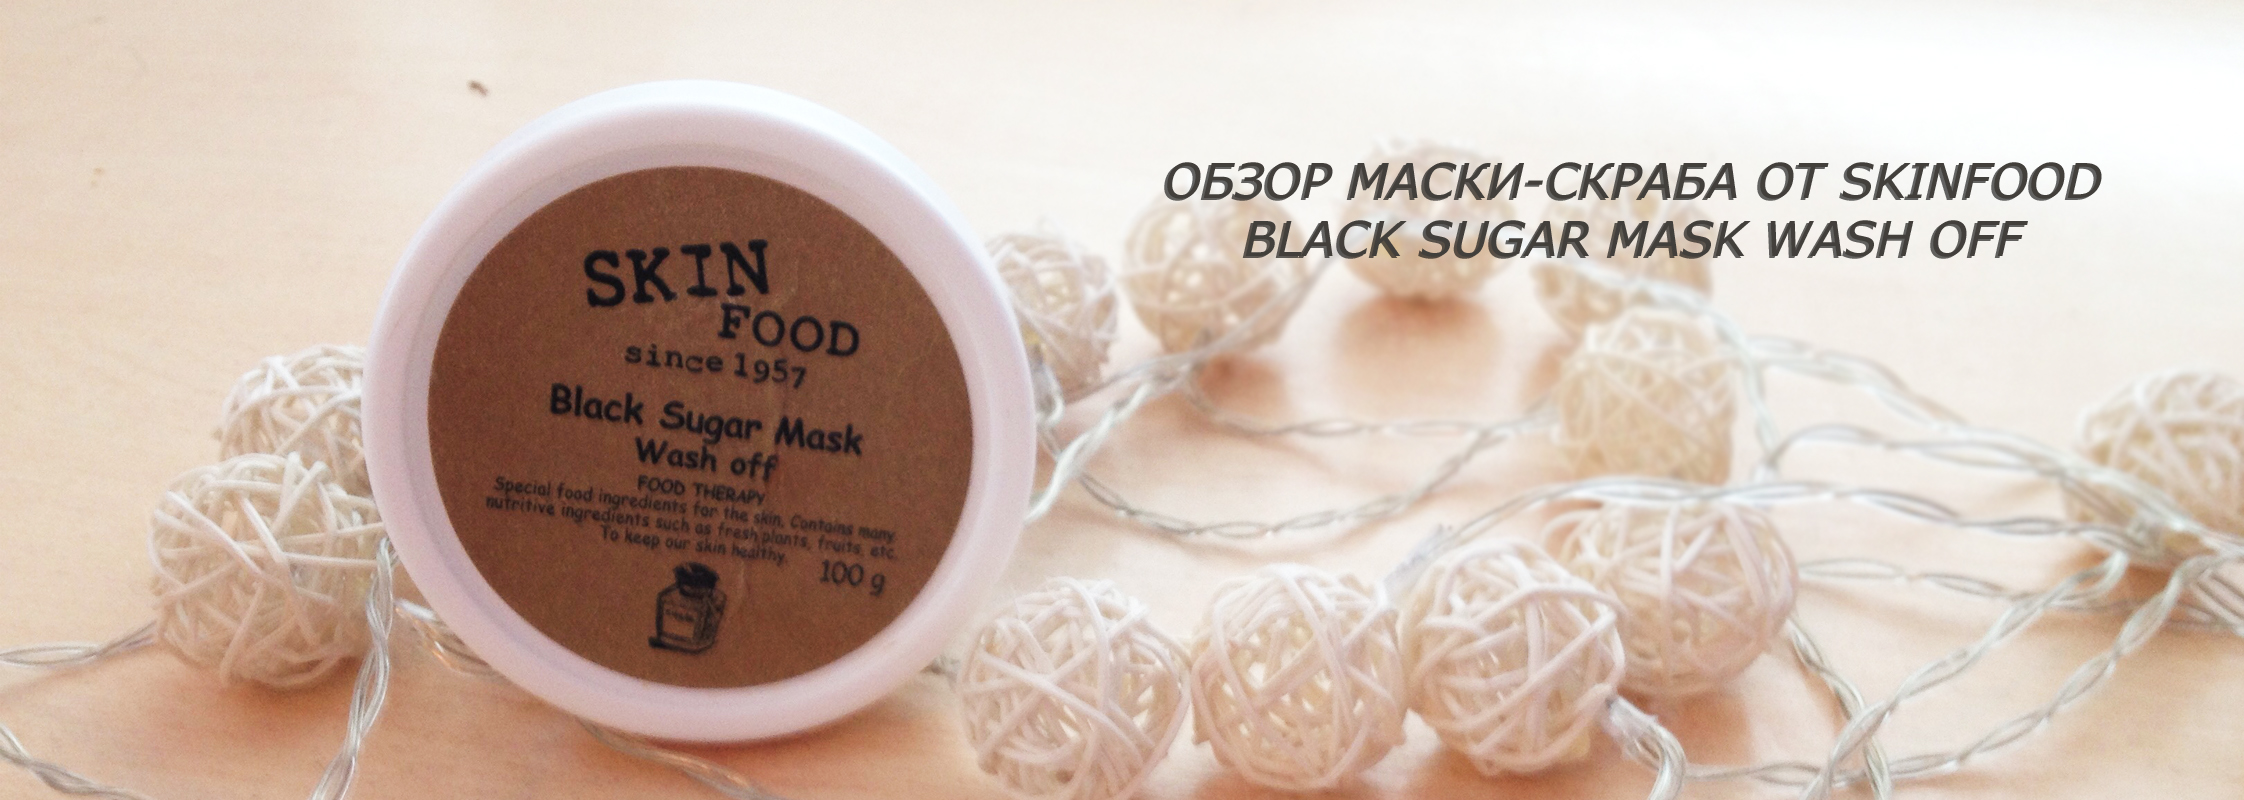 Обзор маски-скраба от Skinfood Black Sugar Mask Wash Off